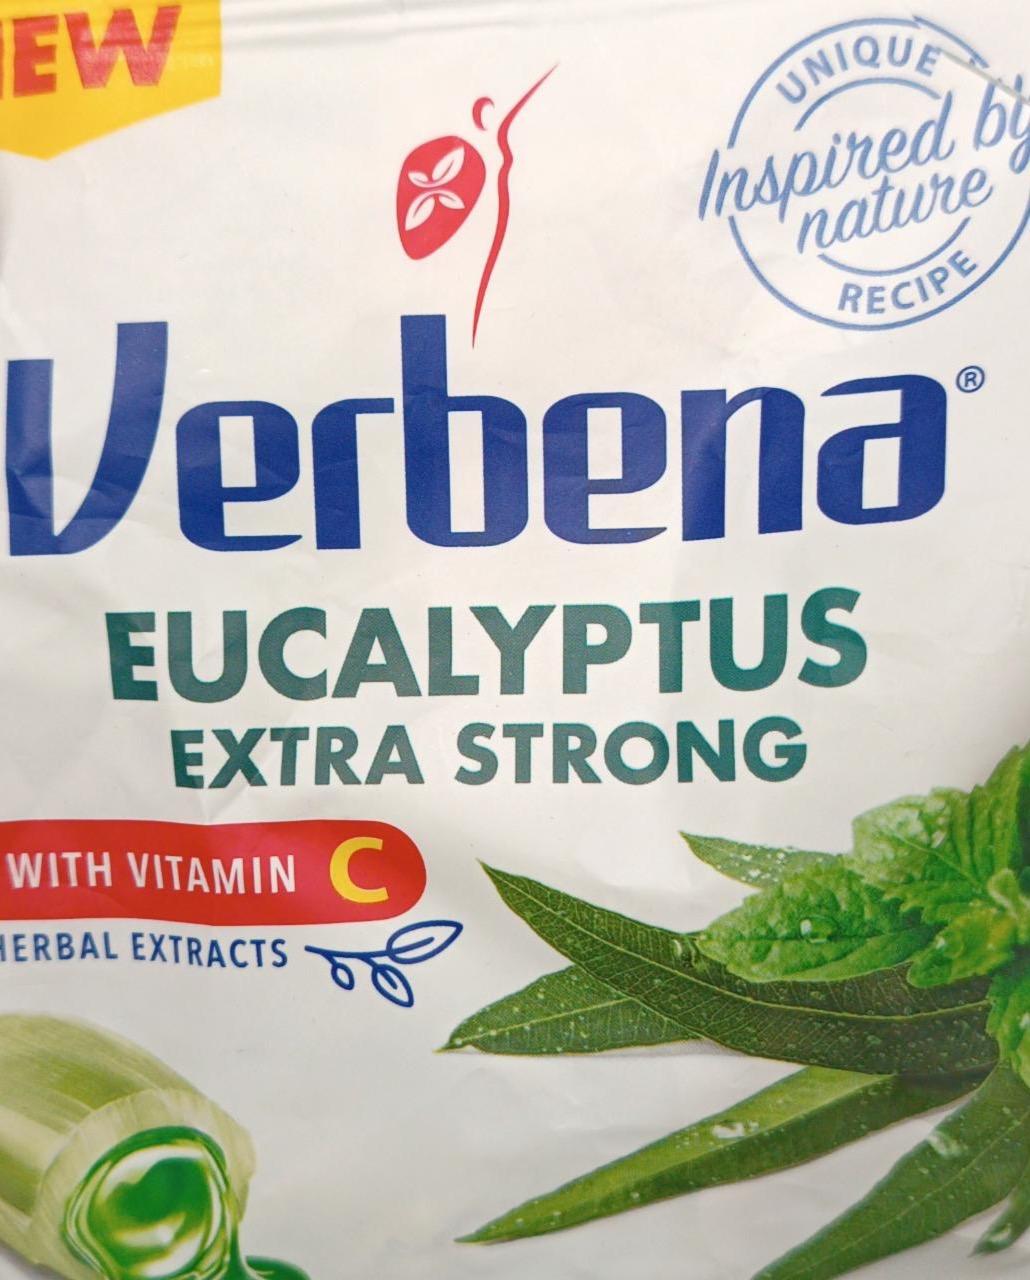 Zdjęcia - Verbena eucalyptus extra strong